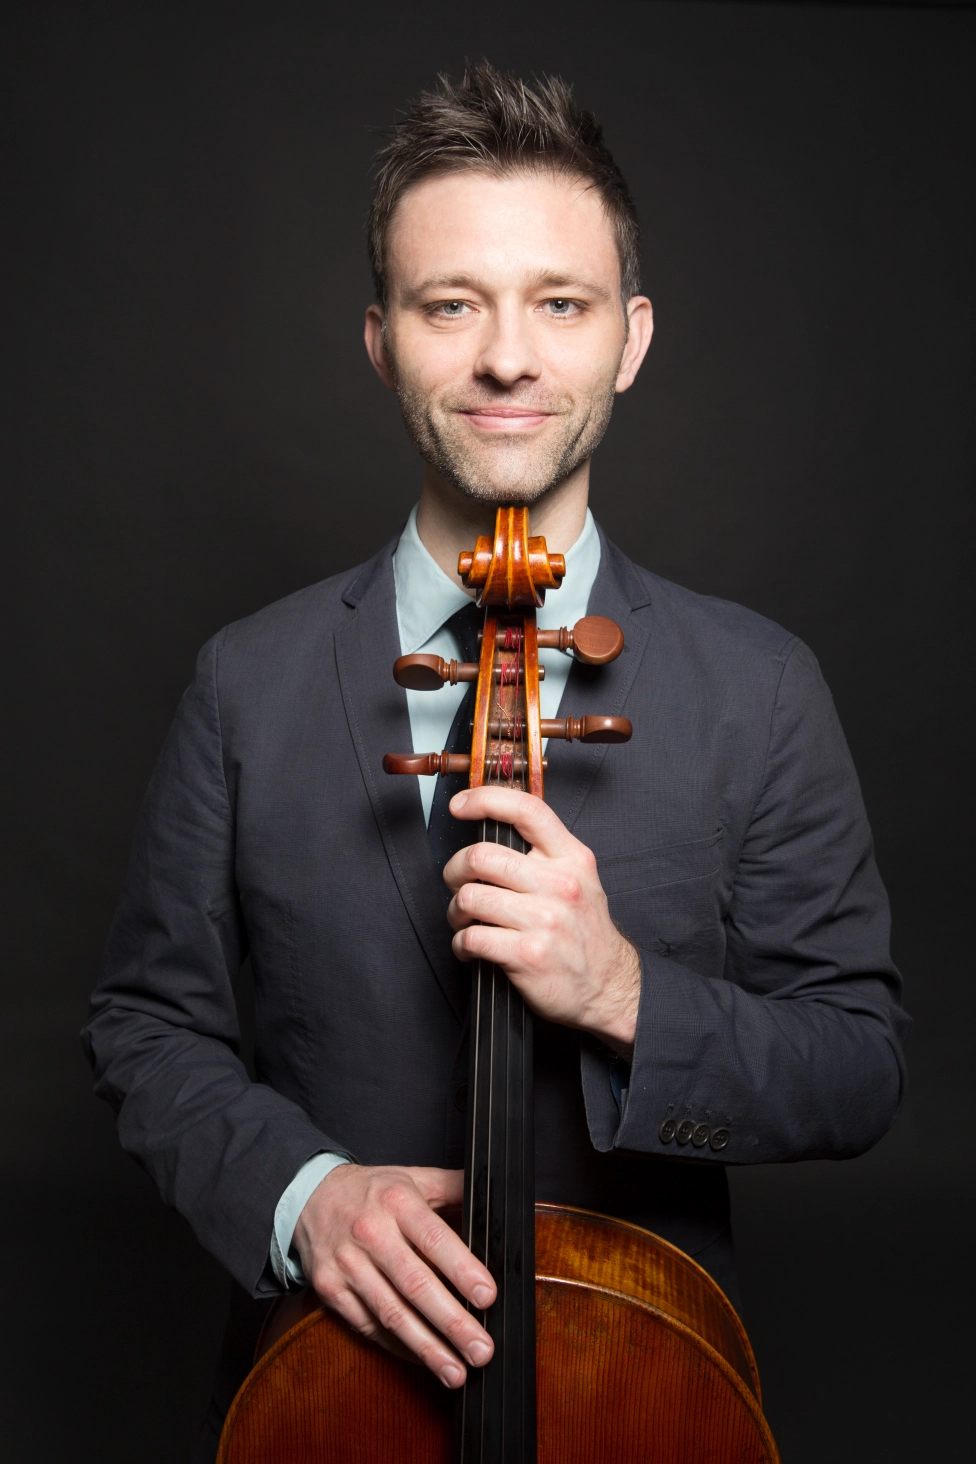 Robert Burkhart, cello